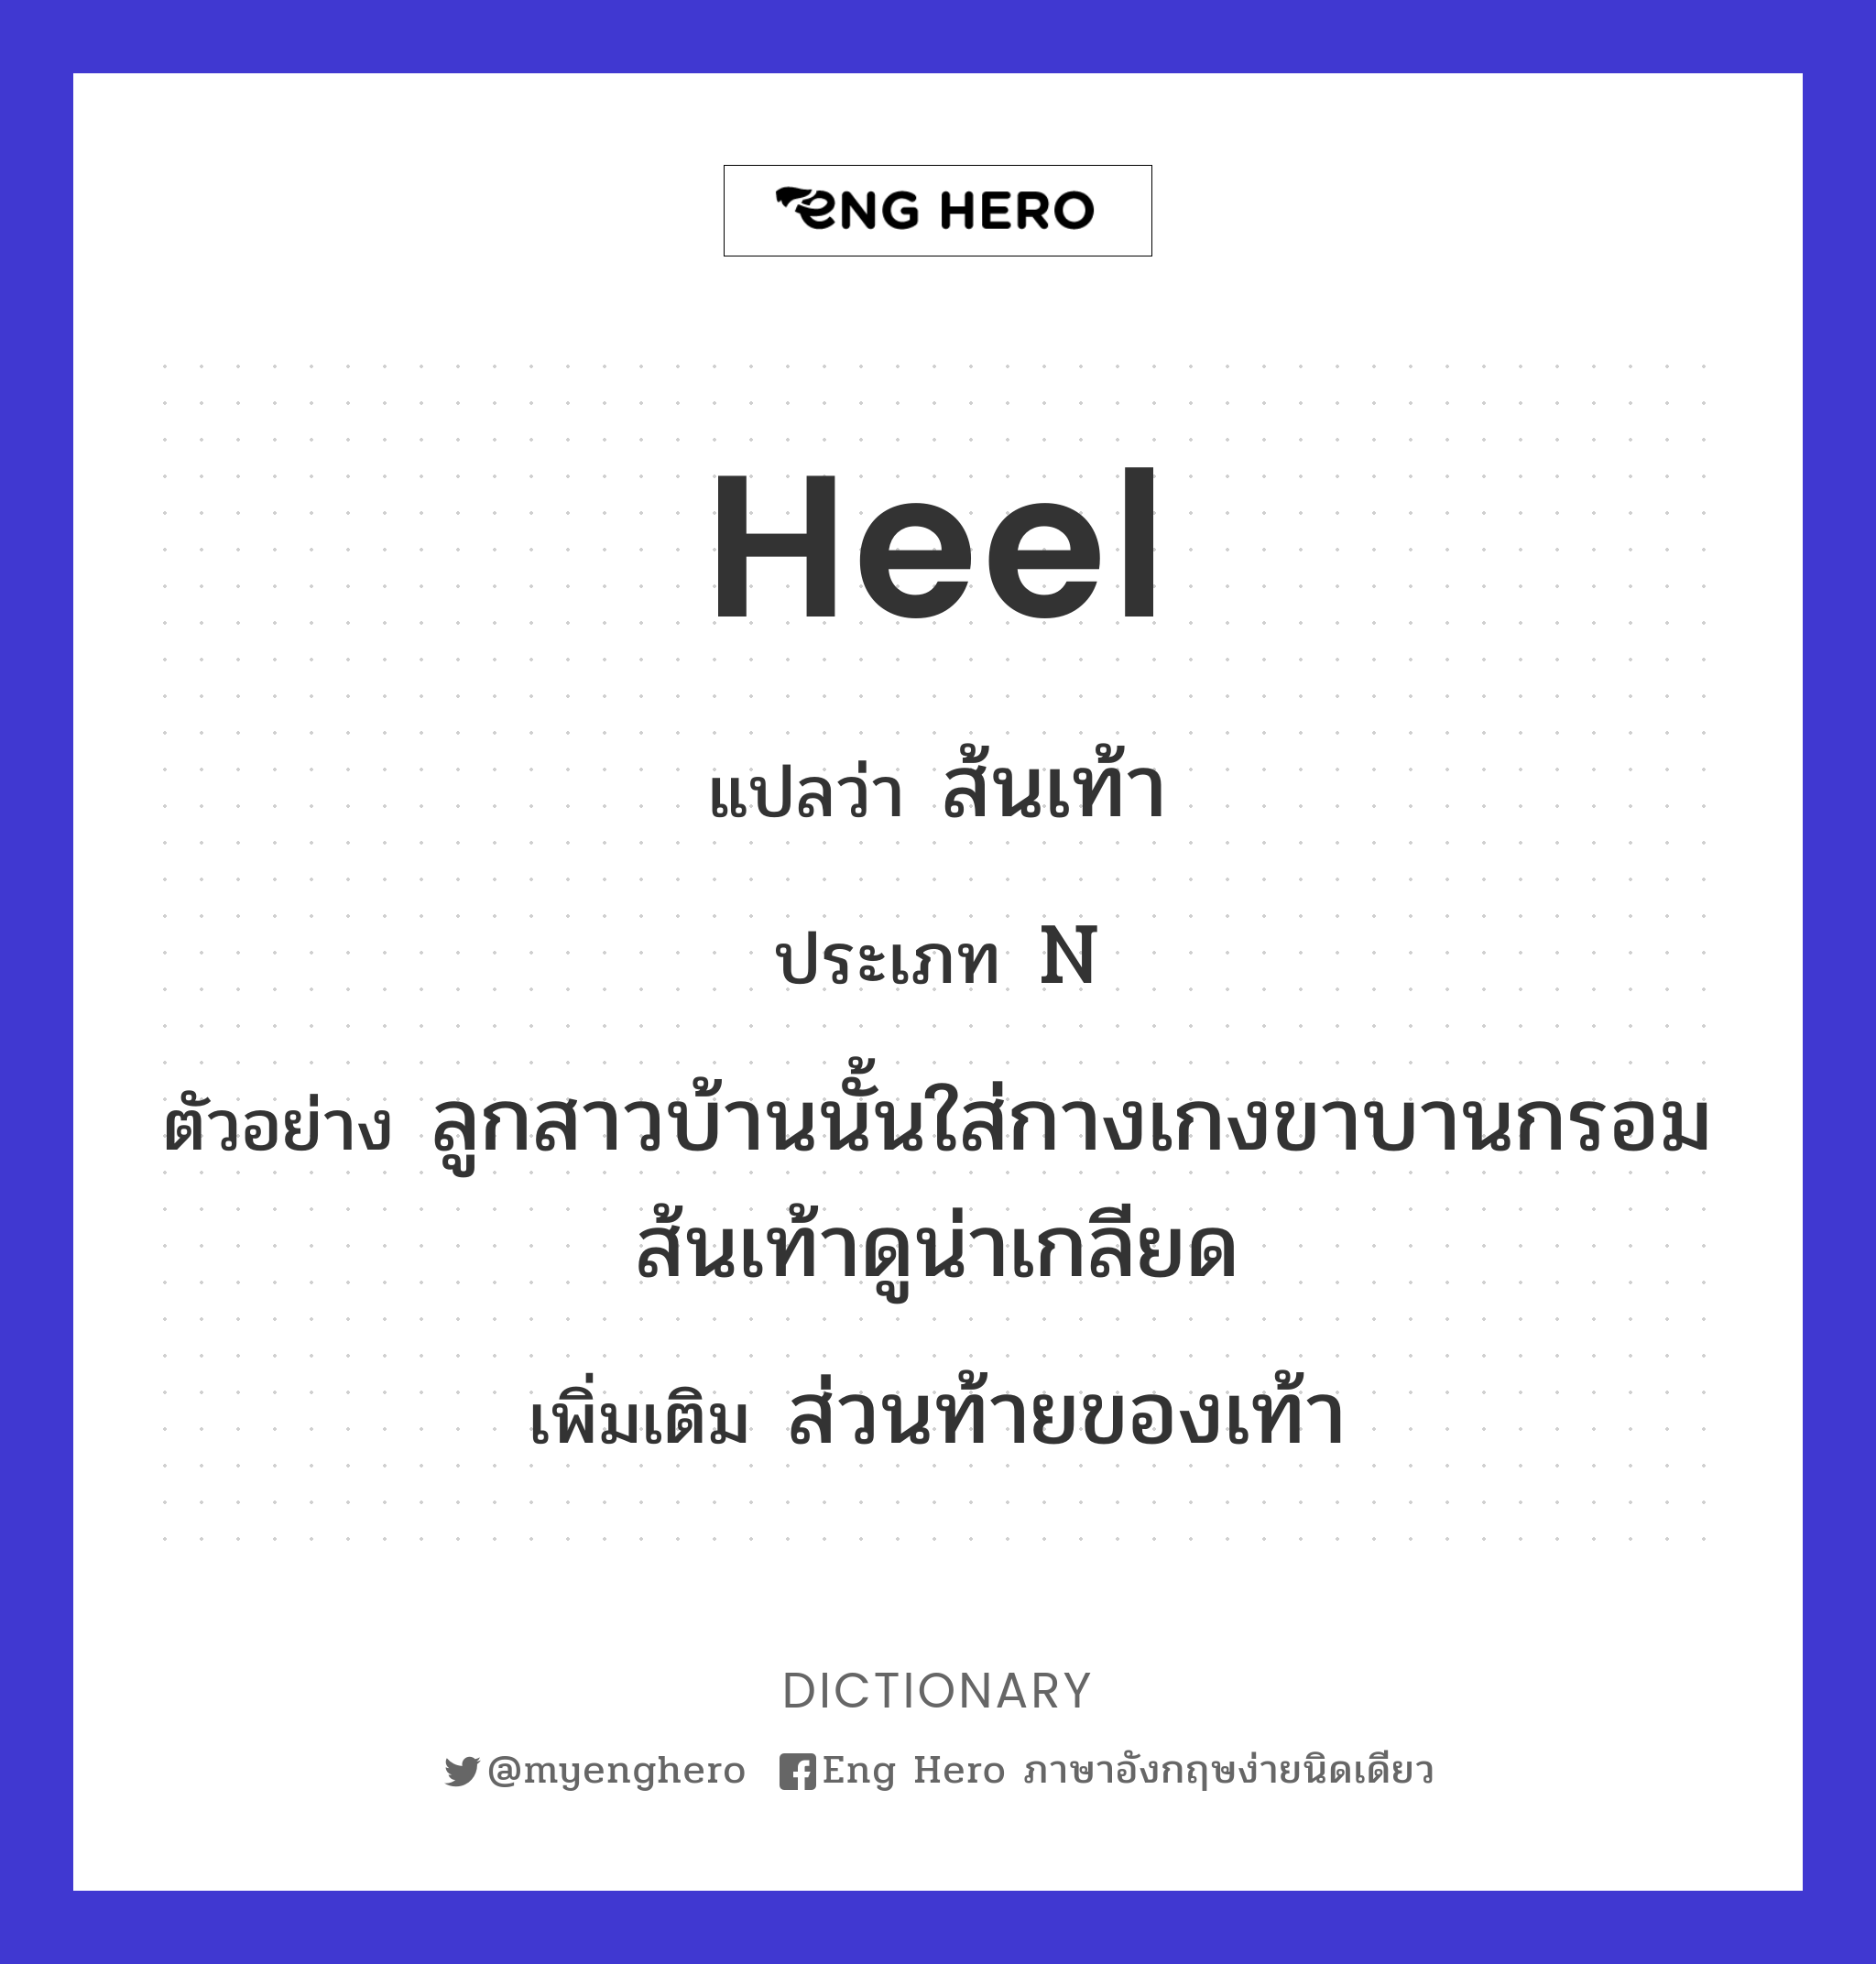 heel